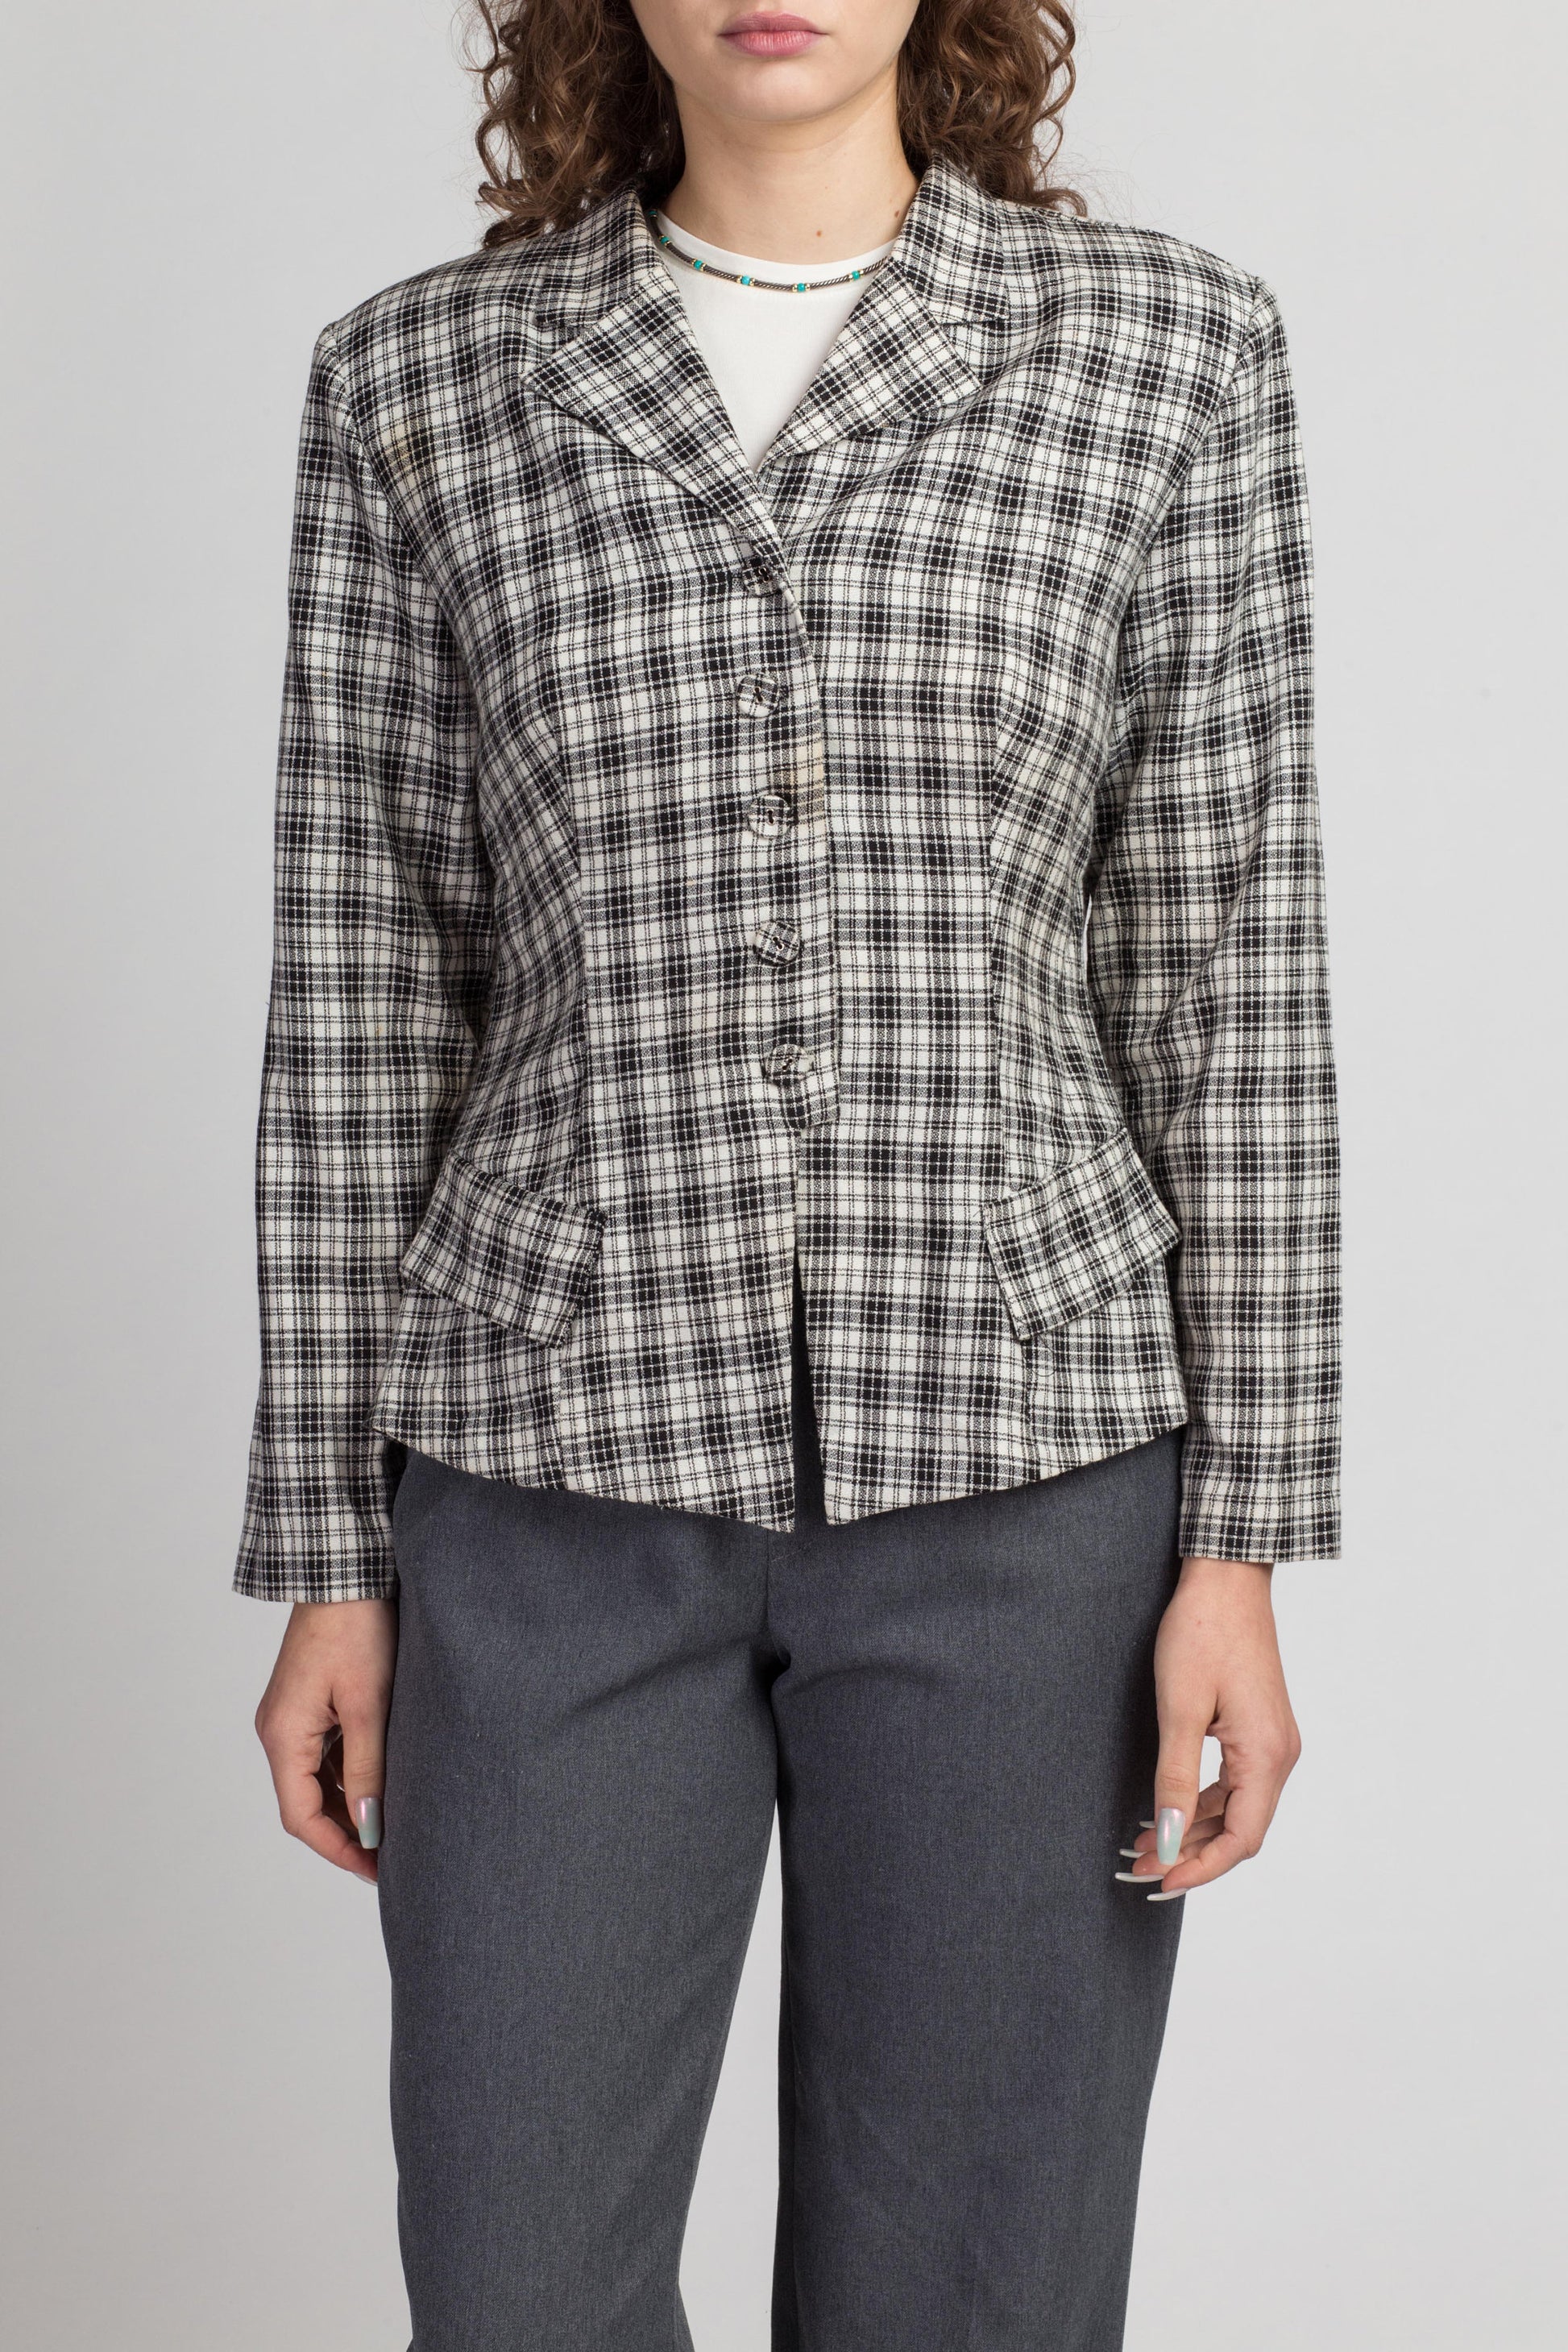 80s Black & White Blazer - Medium | Vintage Button Up Notched Collar Jacket